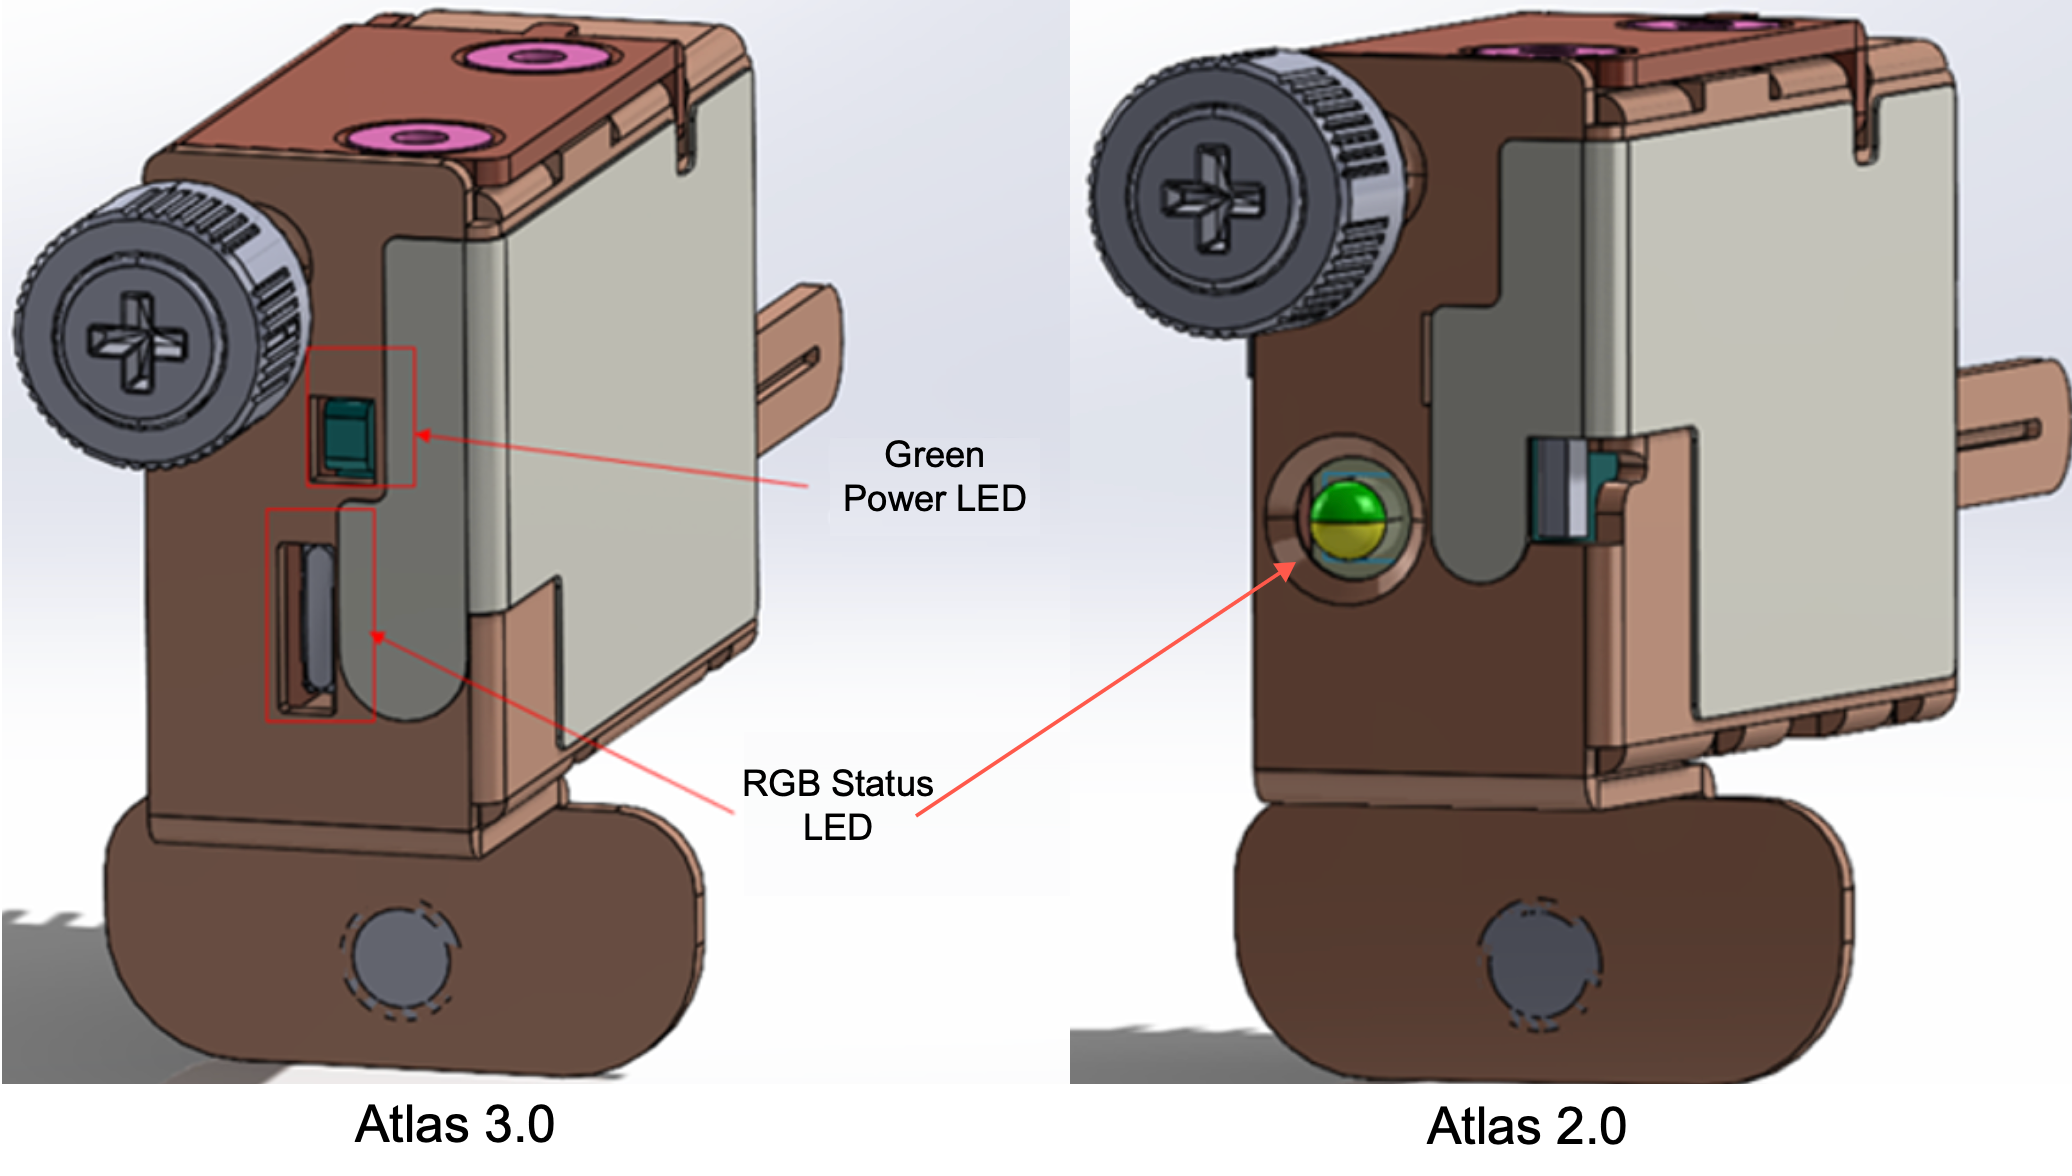 
            Une image des NSK Atlas 2.0 et 3.0 avec le voyant d'état RGB sur chaque NSK et le voyant d'alimentation vert sur l'Atlas 3.0.
          